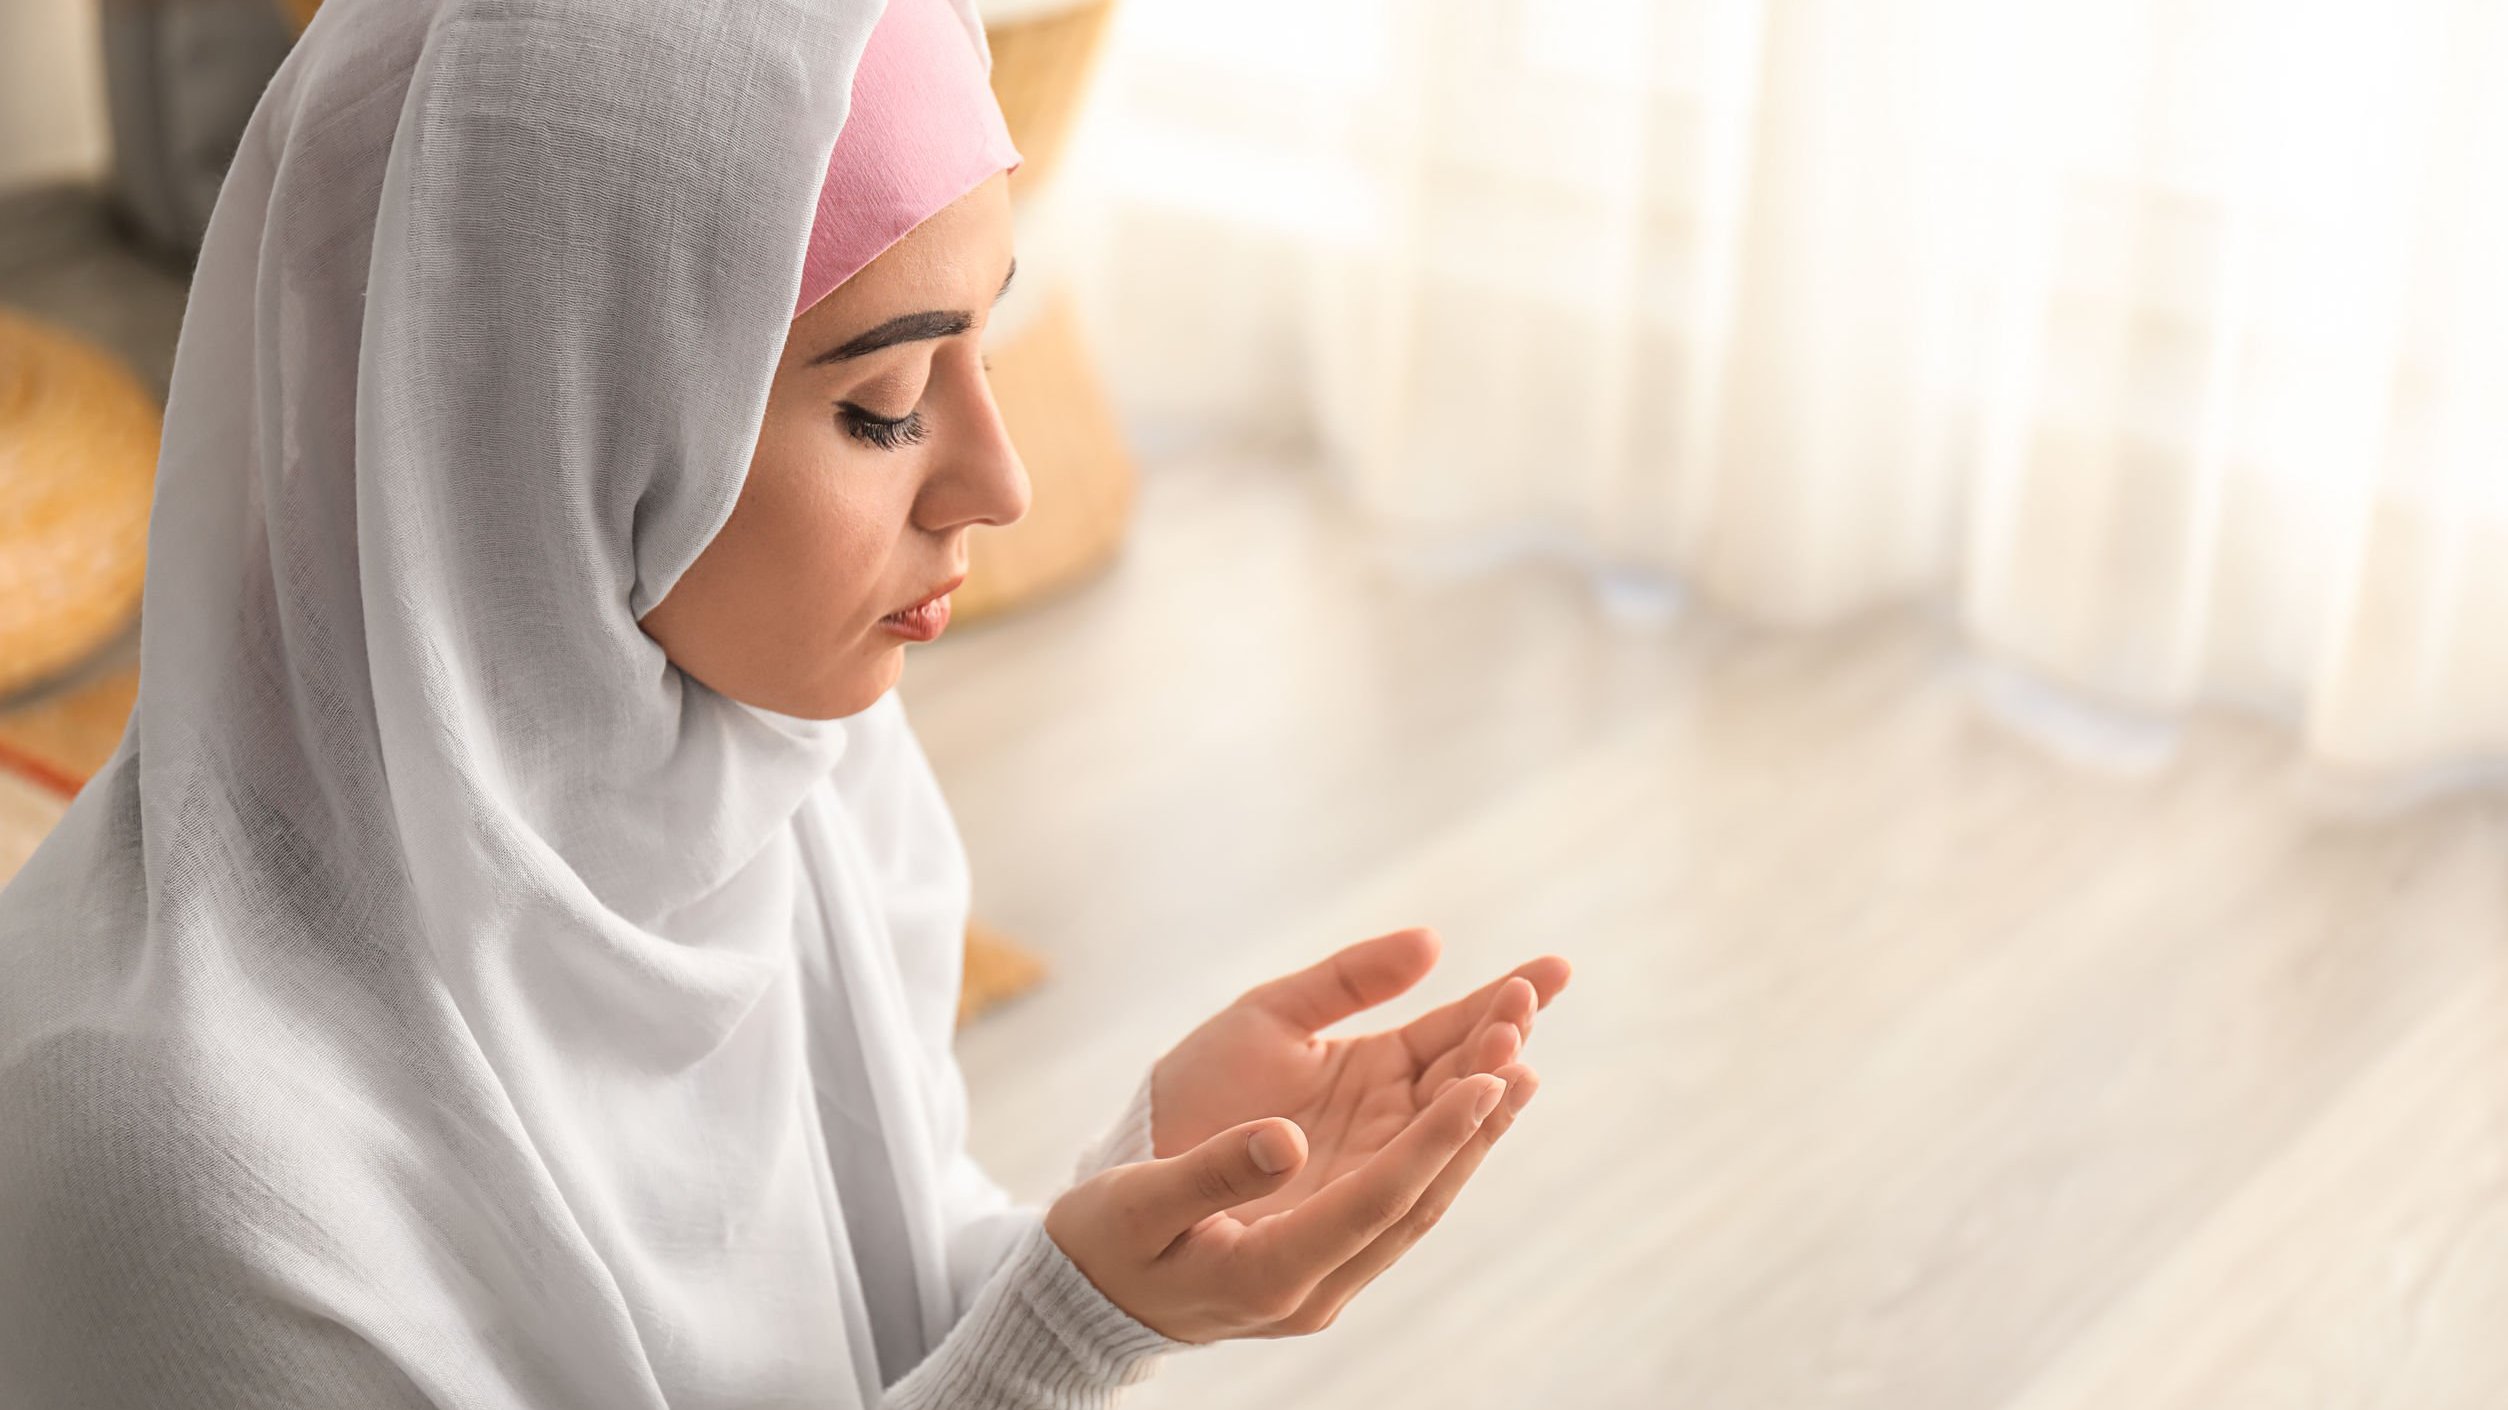 Mulher usando roupas tradicionais do islamismo orando ajoelhada no chão